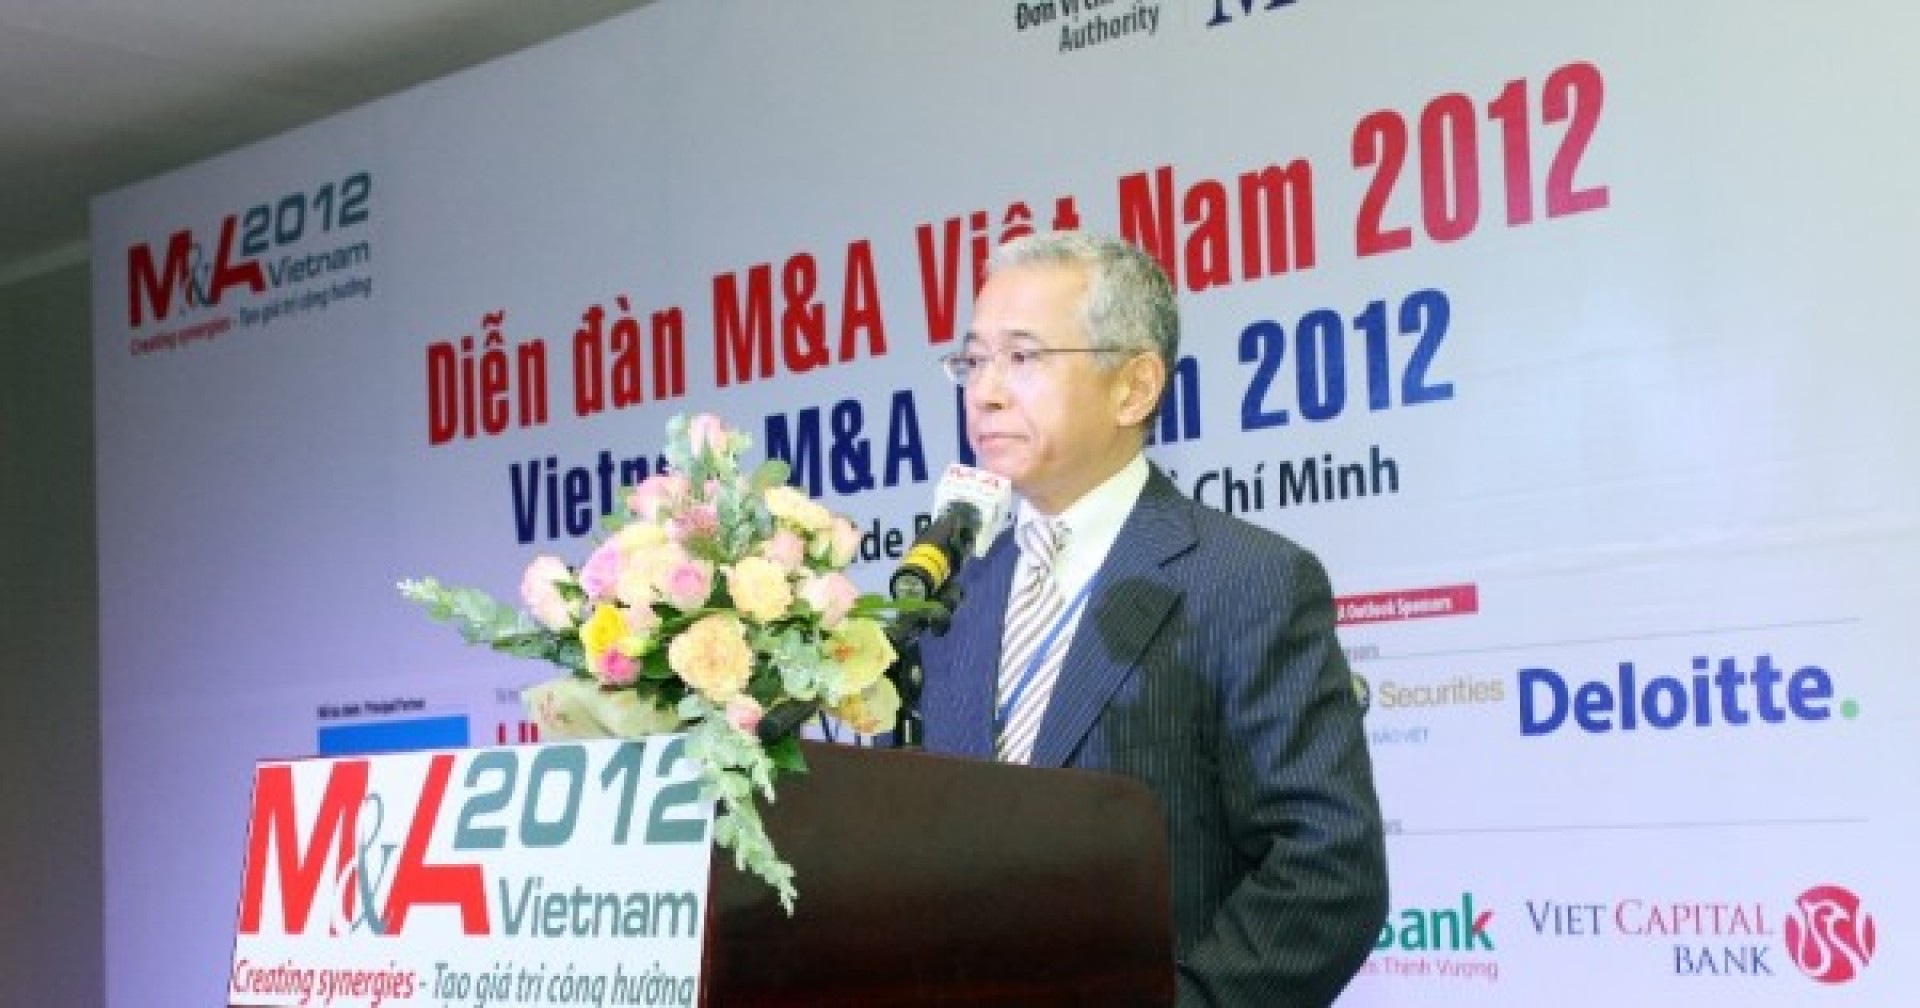 [HN] Diễn Đàn M&A Vietnam Forum Tuyển Dụng Tình Nguyện Viên 2017